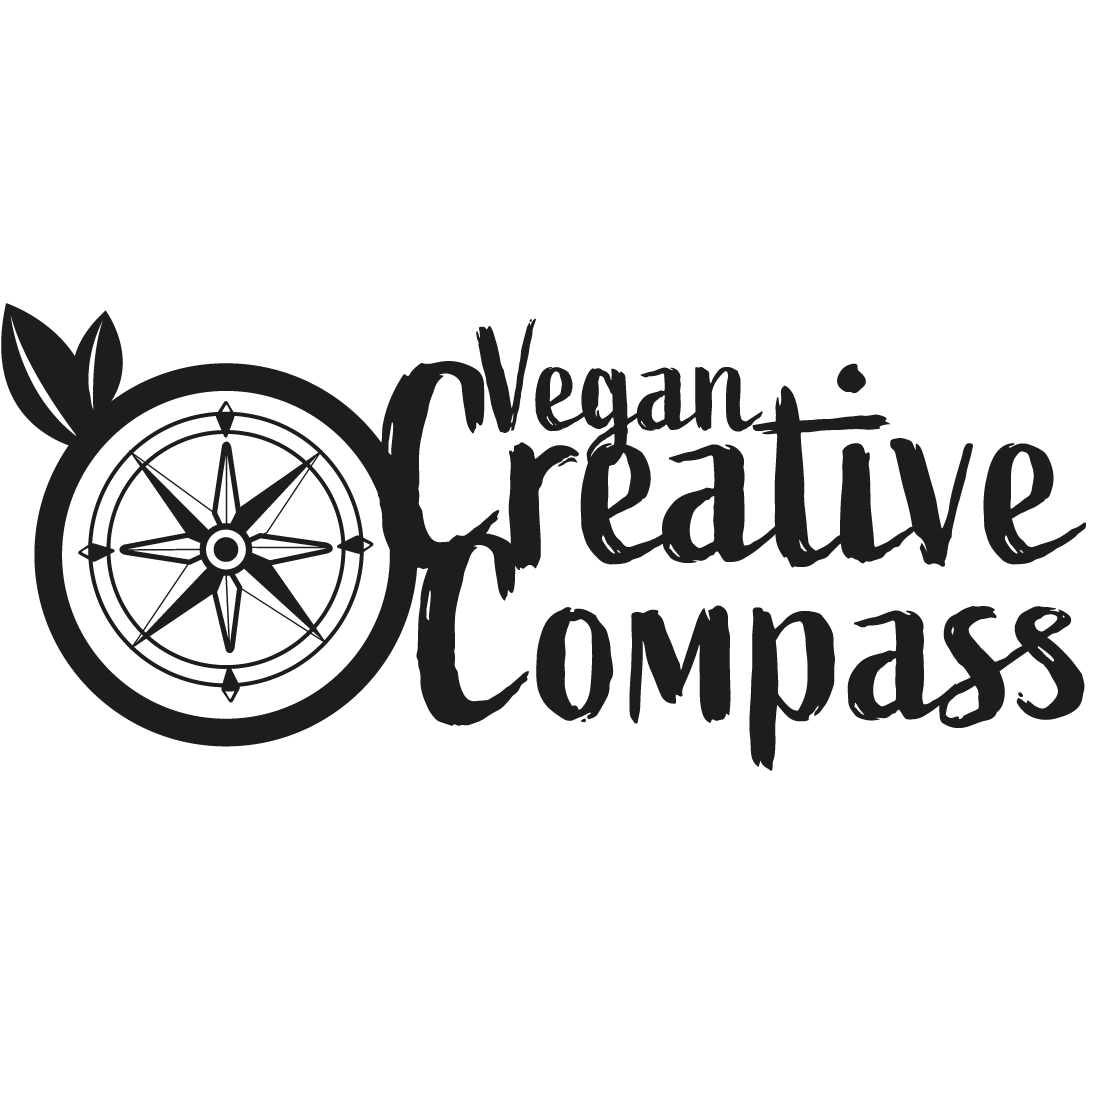 Vegan Creative Compass